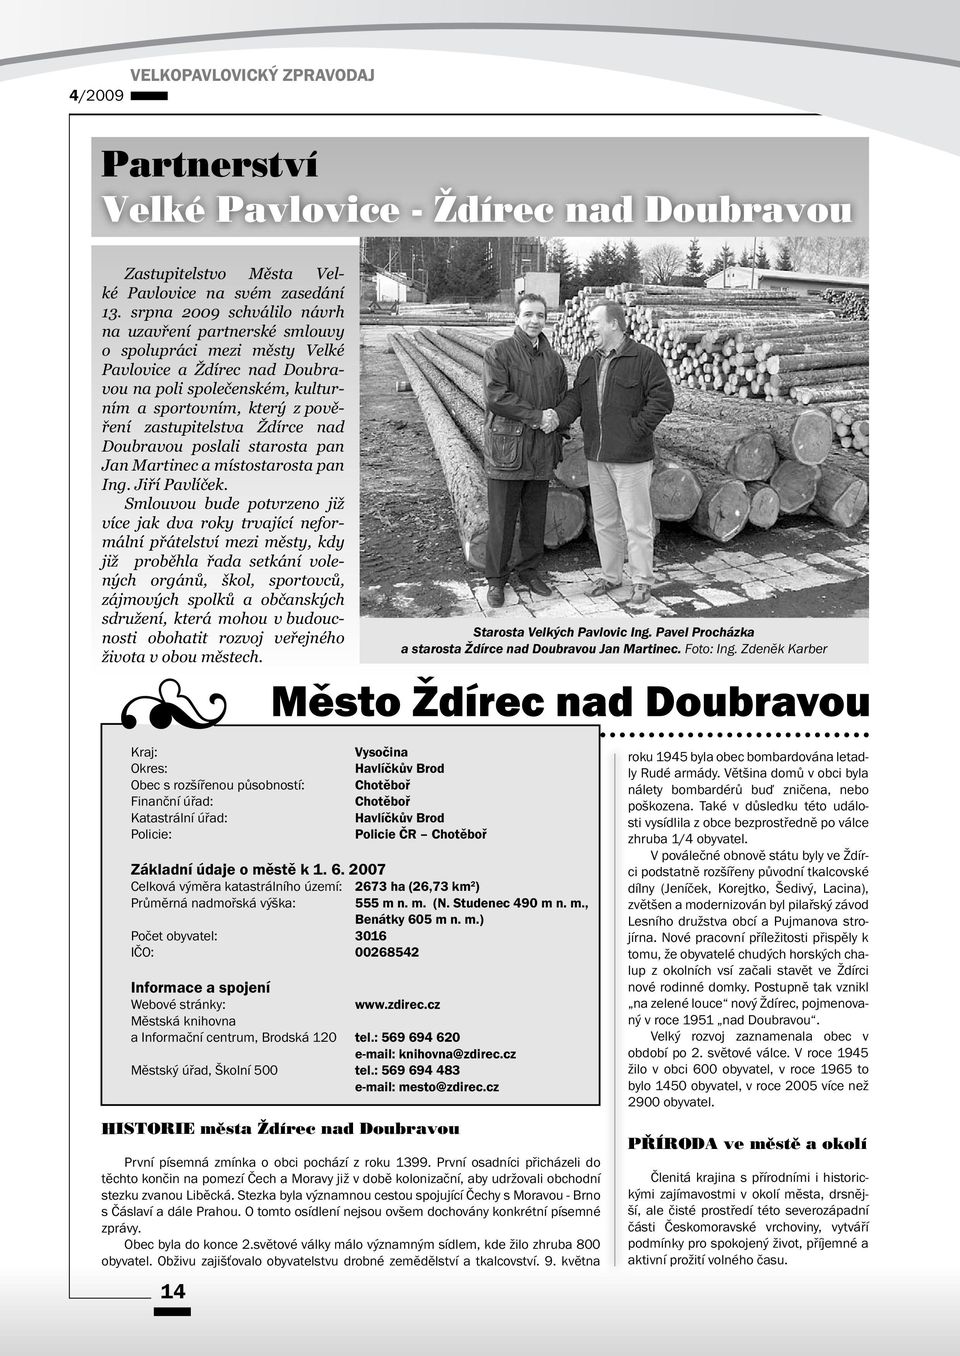 Ždírce nad Doubravou poslali starosta pan Jan Martinec a místostarosta pan Ing. Jiří Pavlíček.